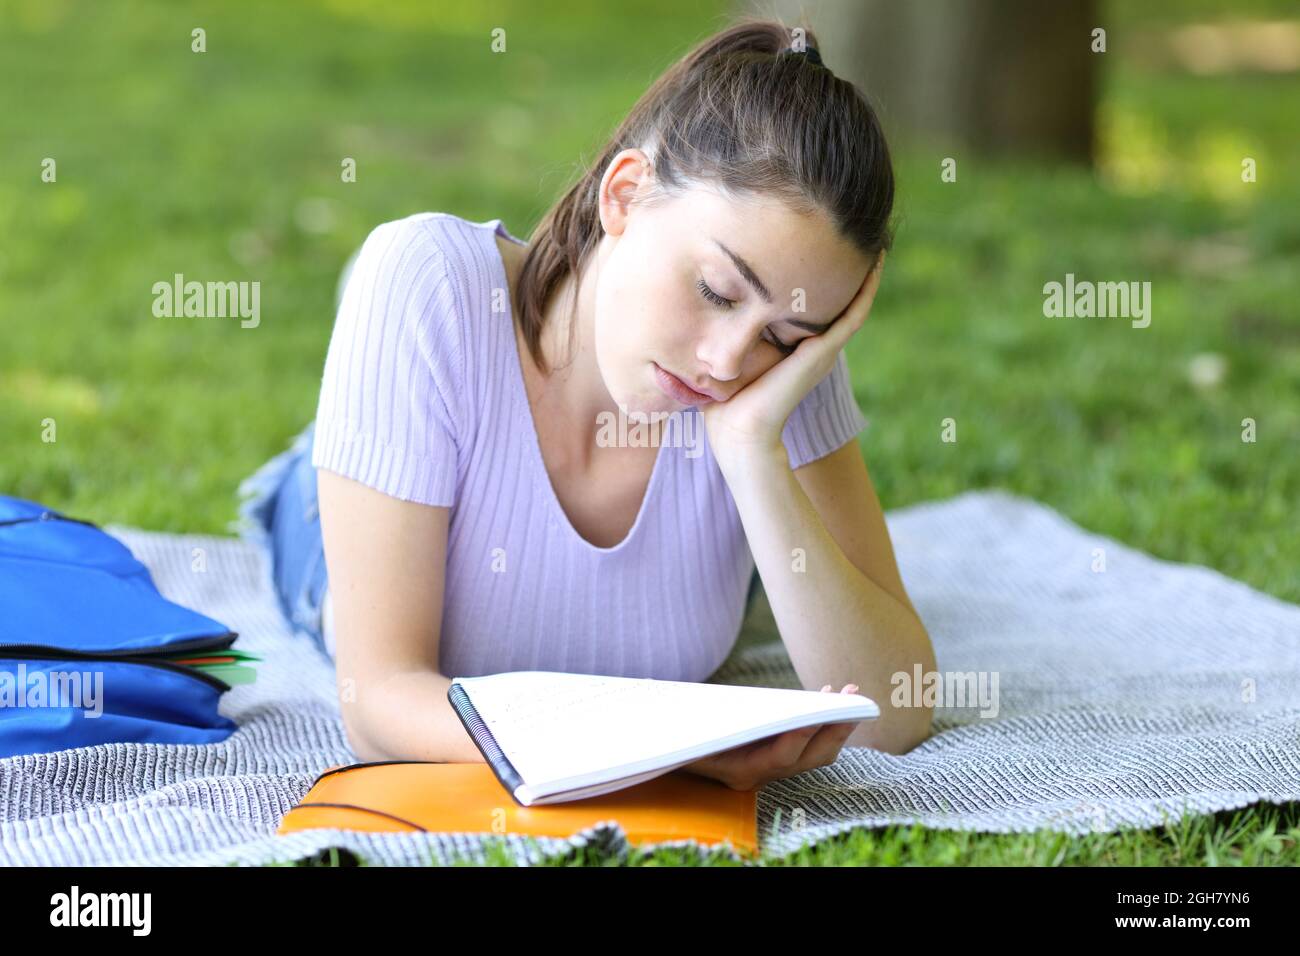 Addormentato studente cercando di memorizzare le note che giacciono sull'erba in un parco o campus Foto Stock